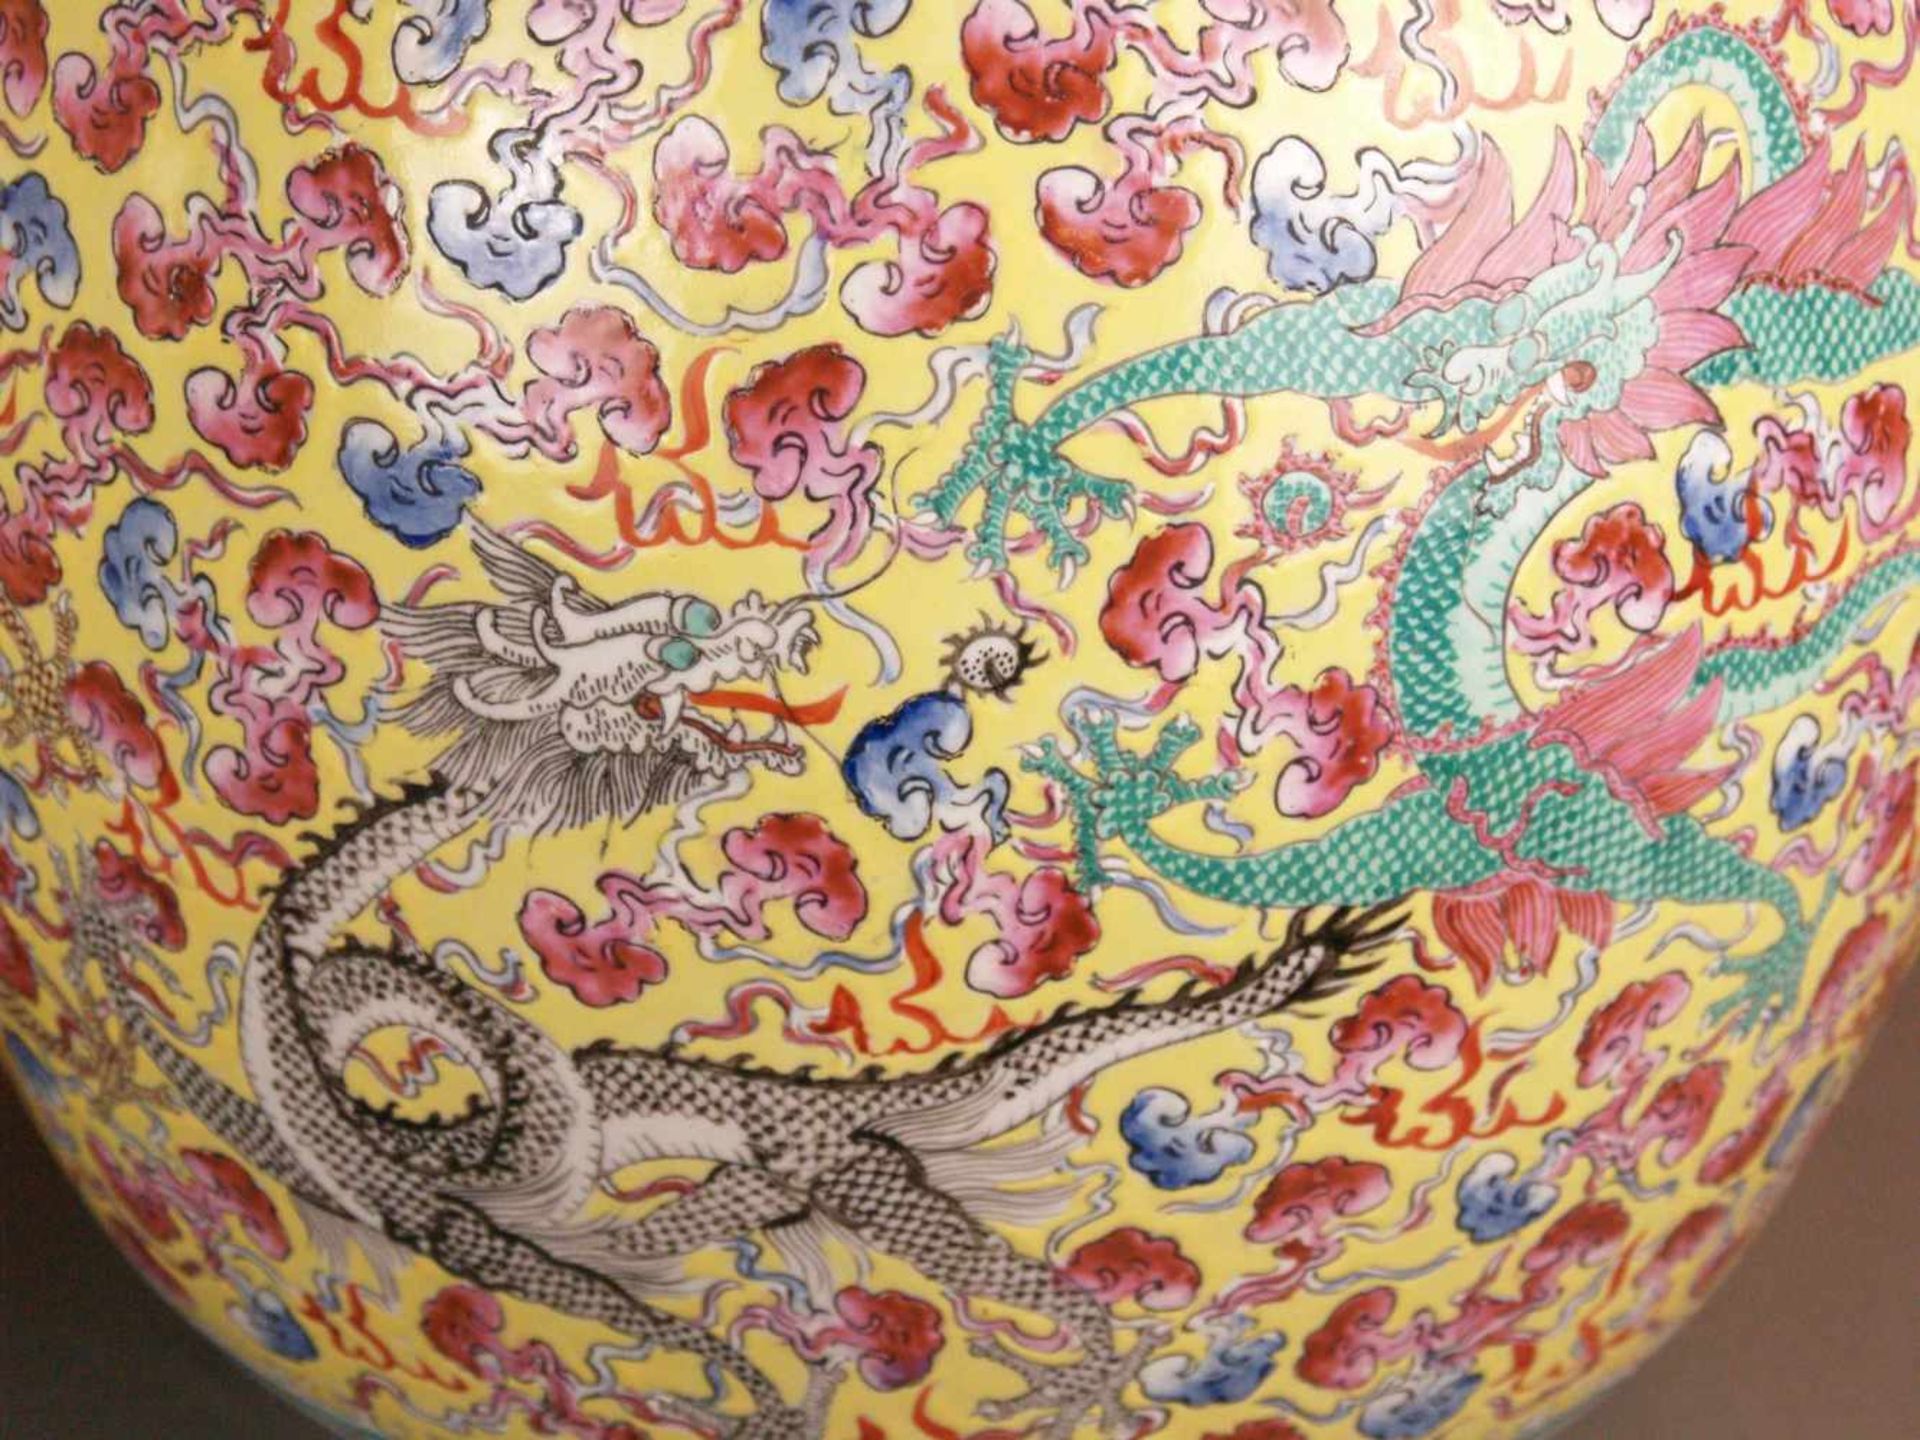 Paar Bodenvasen - China 20.Jh.,Tian qiu ping-Typus, üppiger Dekor in polychromen Emailfarben, auf - Bild 12 aus 15